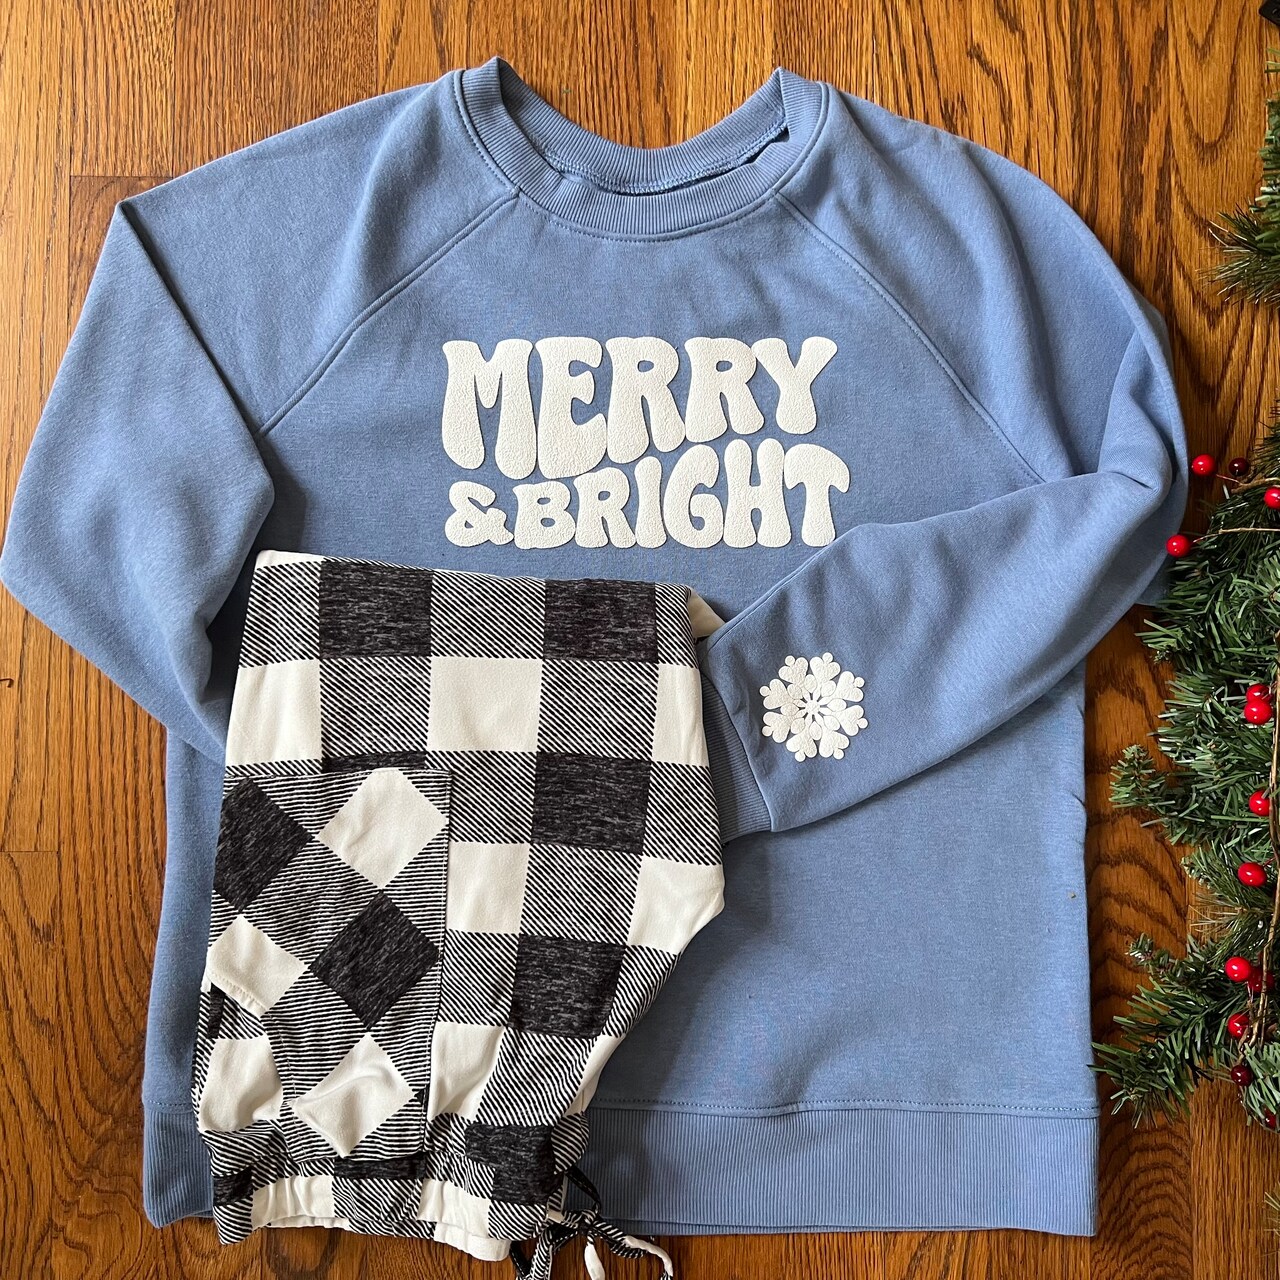 Make Matching Holiday Sweatshirts with any Cutting Machine